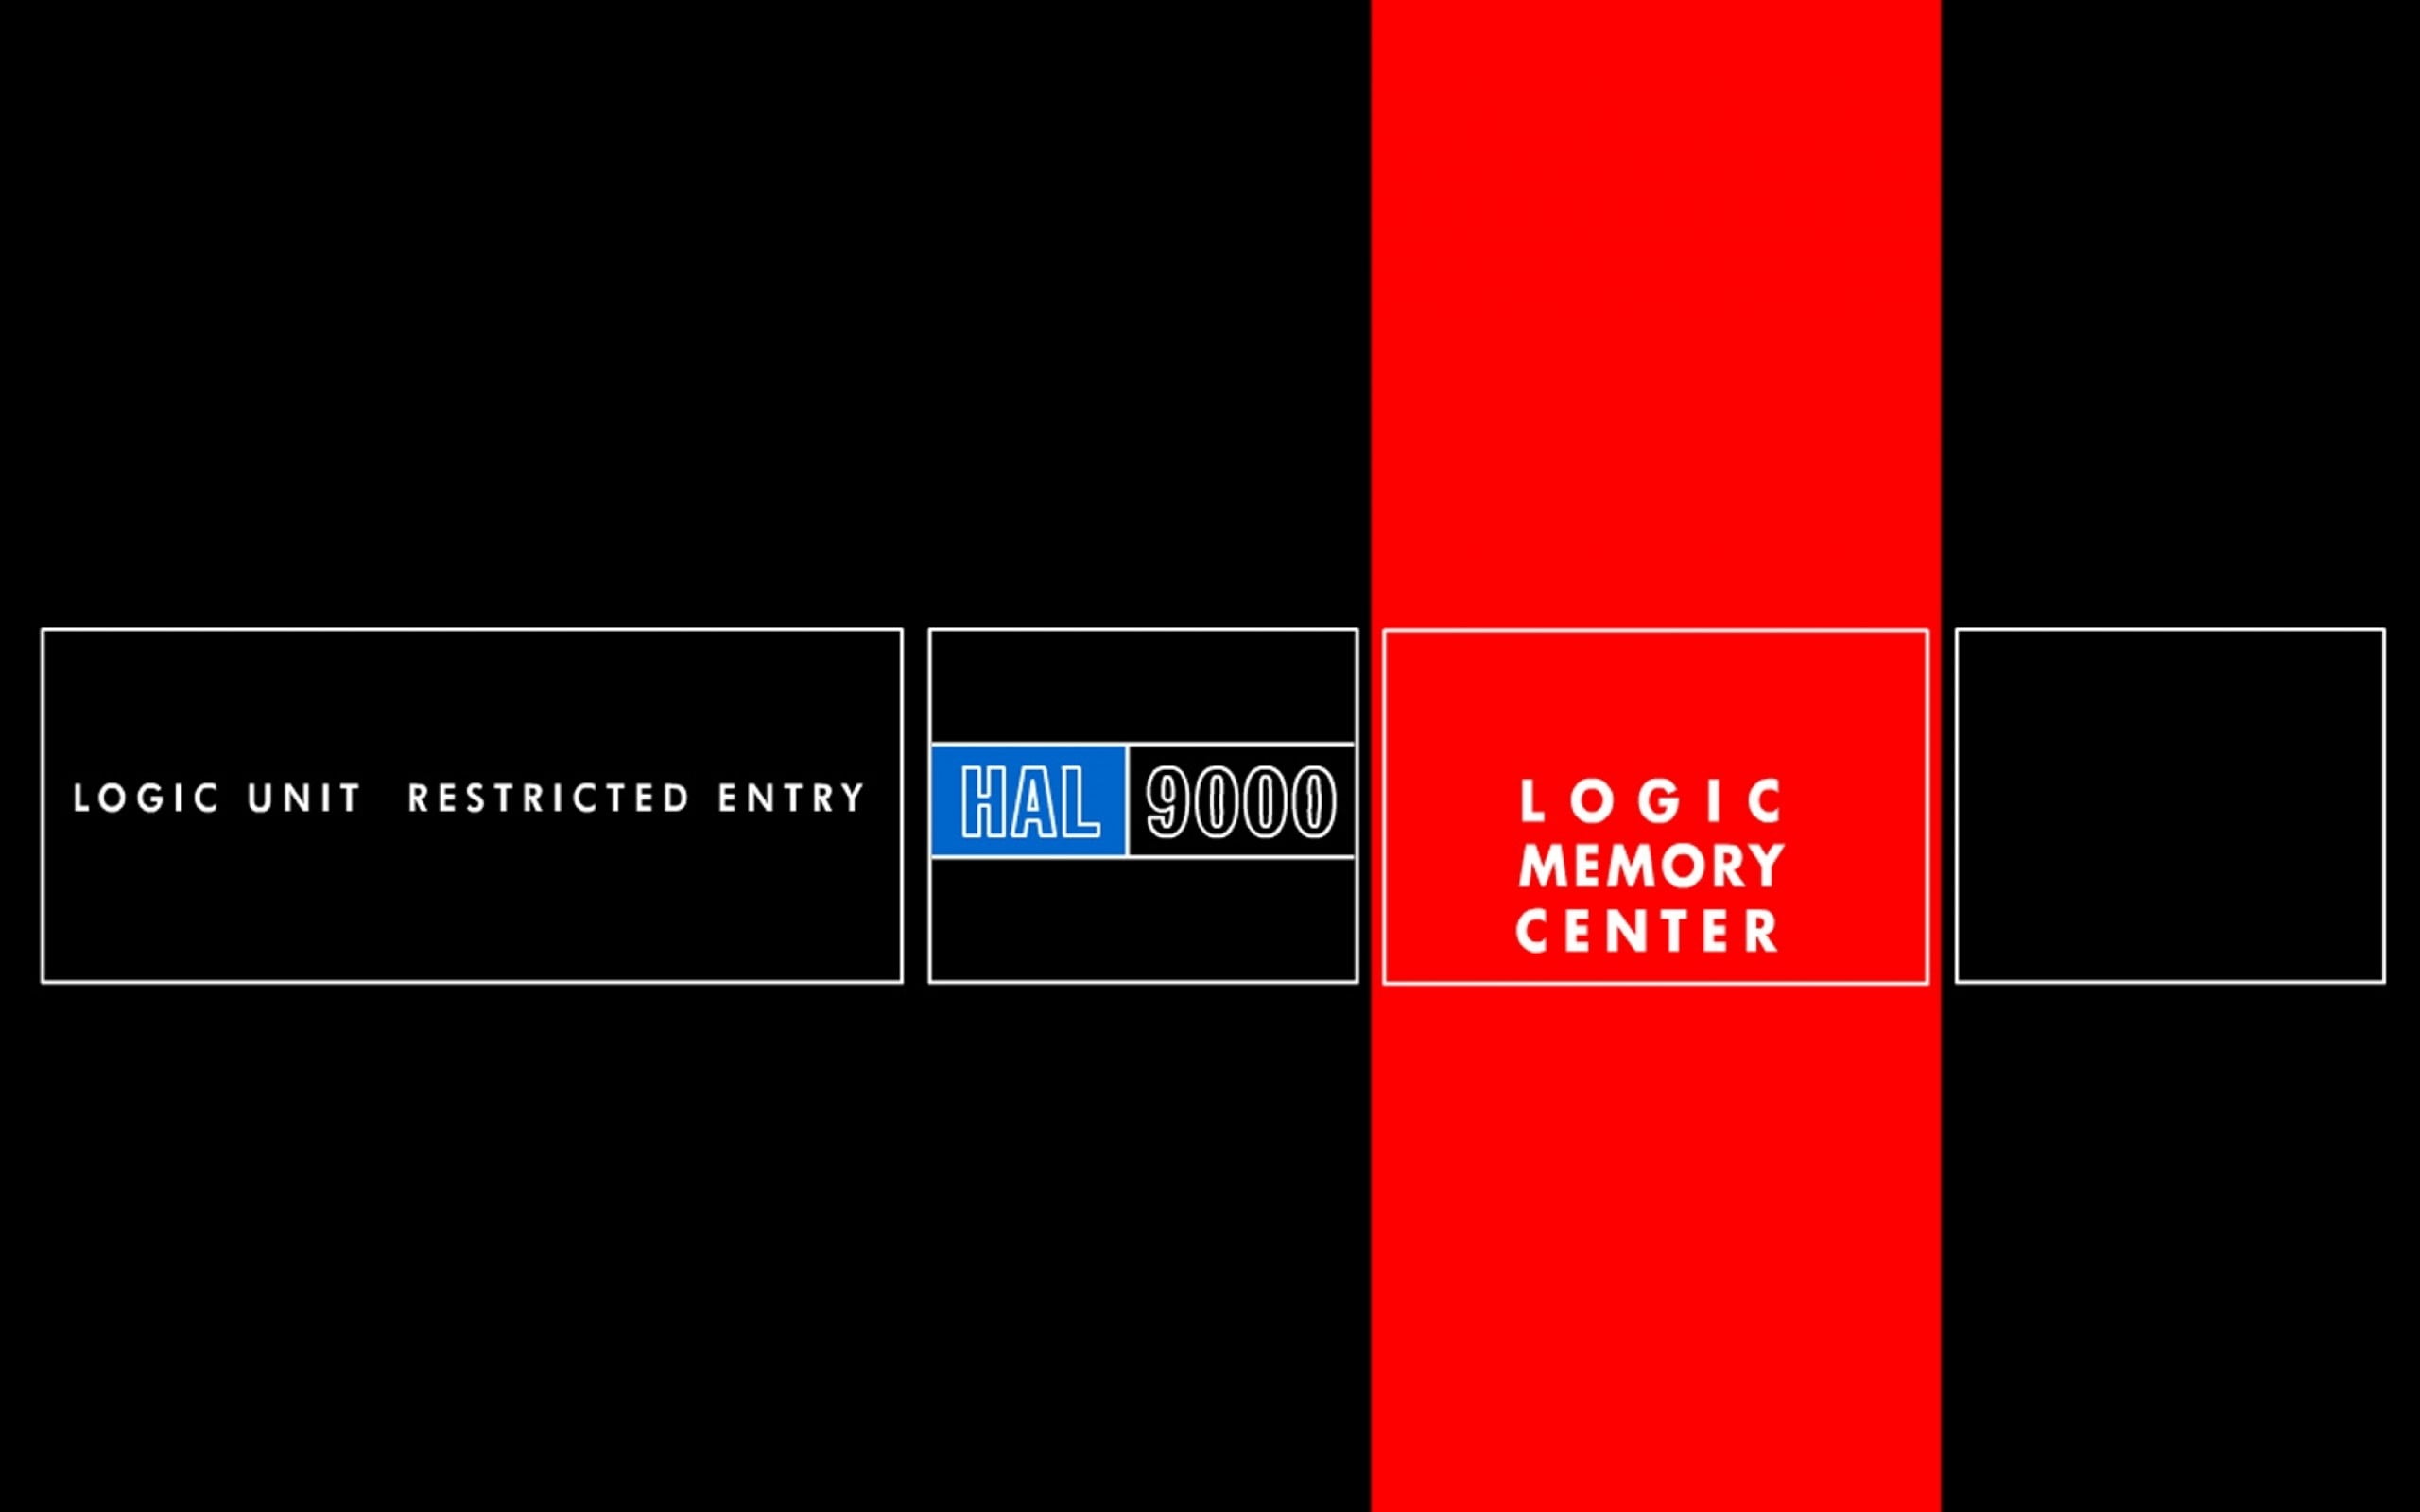 Logic Memory Center sẽ khiến bạn trải nghiệm những khoảnh khắc đầy thú vị với một thế giới máy tính phát triển rất nhanh. Thiết kế nghệ thuật và những hiệu ứng đa dạng sẽ khiến bạn có cảm giác như đang thế giới của tương lai.